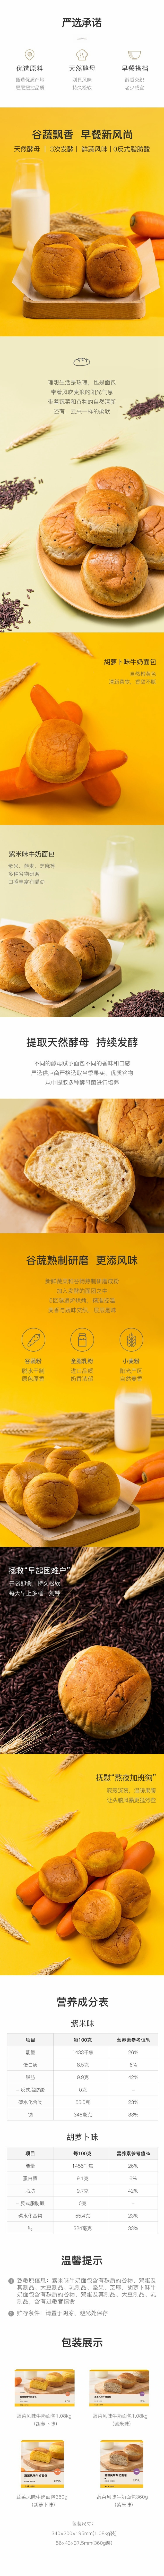 【中国直邮】网易严选  蔬菜风味牛奶面包 看得见谷物颗粒 紫米味-360克 早餐甜点零食 即食面包